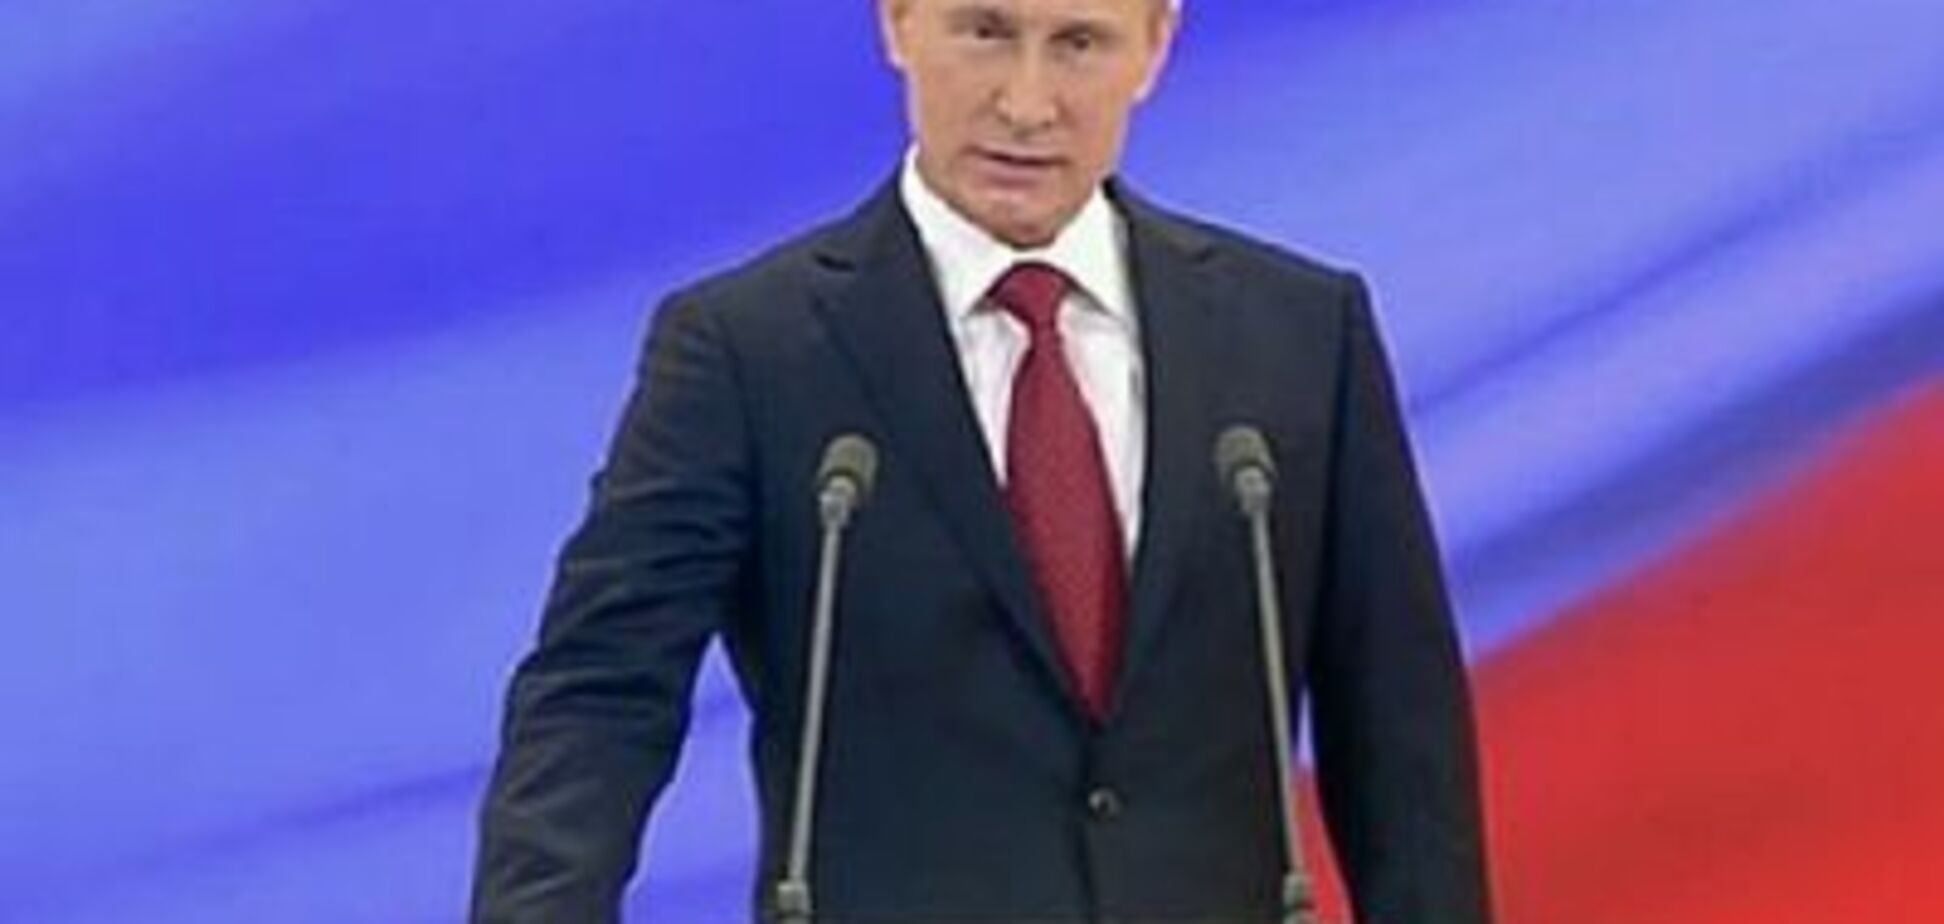 Скасування виборів і 'коронація' Путіна: озвучений прогноз про майбутнє Росії